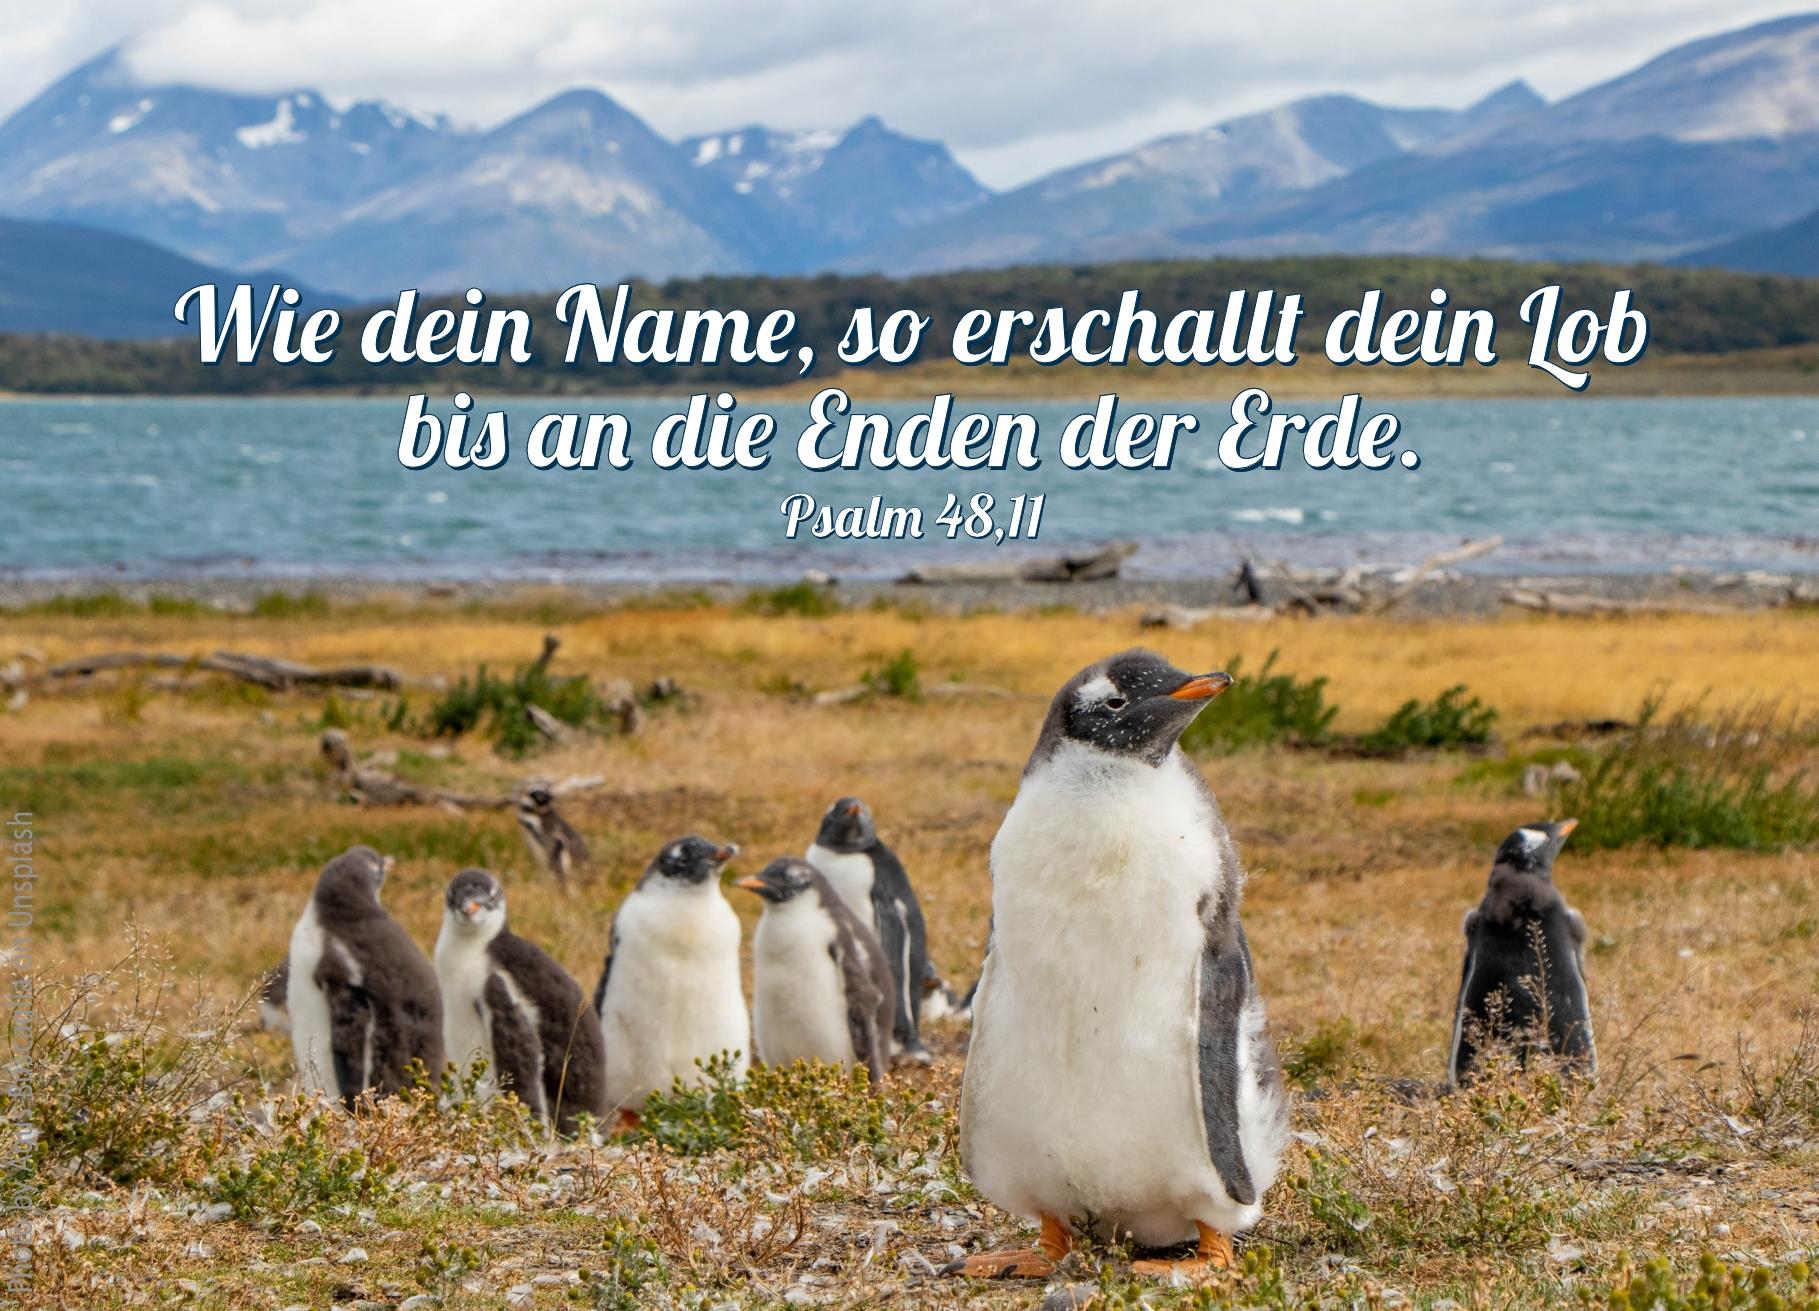 alt="Pinguine_auf_Gras_vor_Wasser_erwartet_bibelhoerbuch_Ehrenplaetze_bei_Jesus"